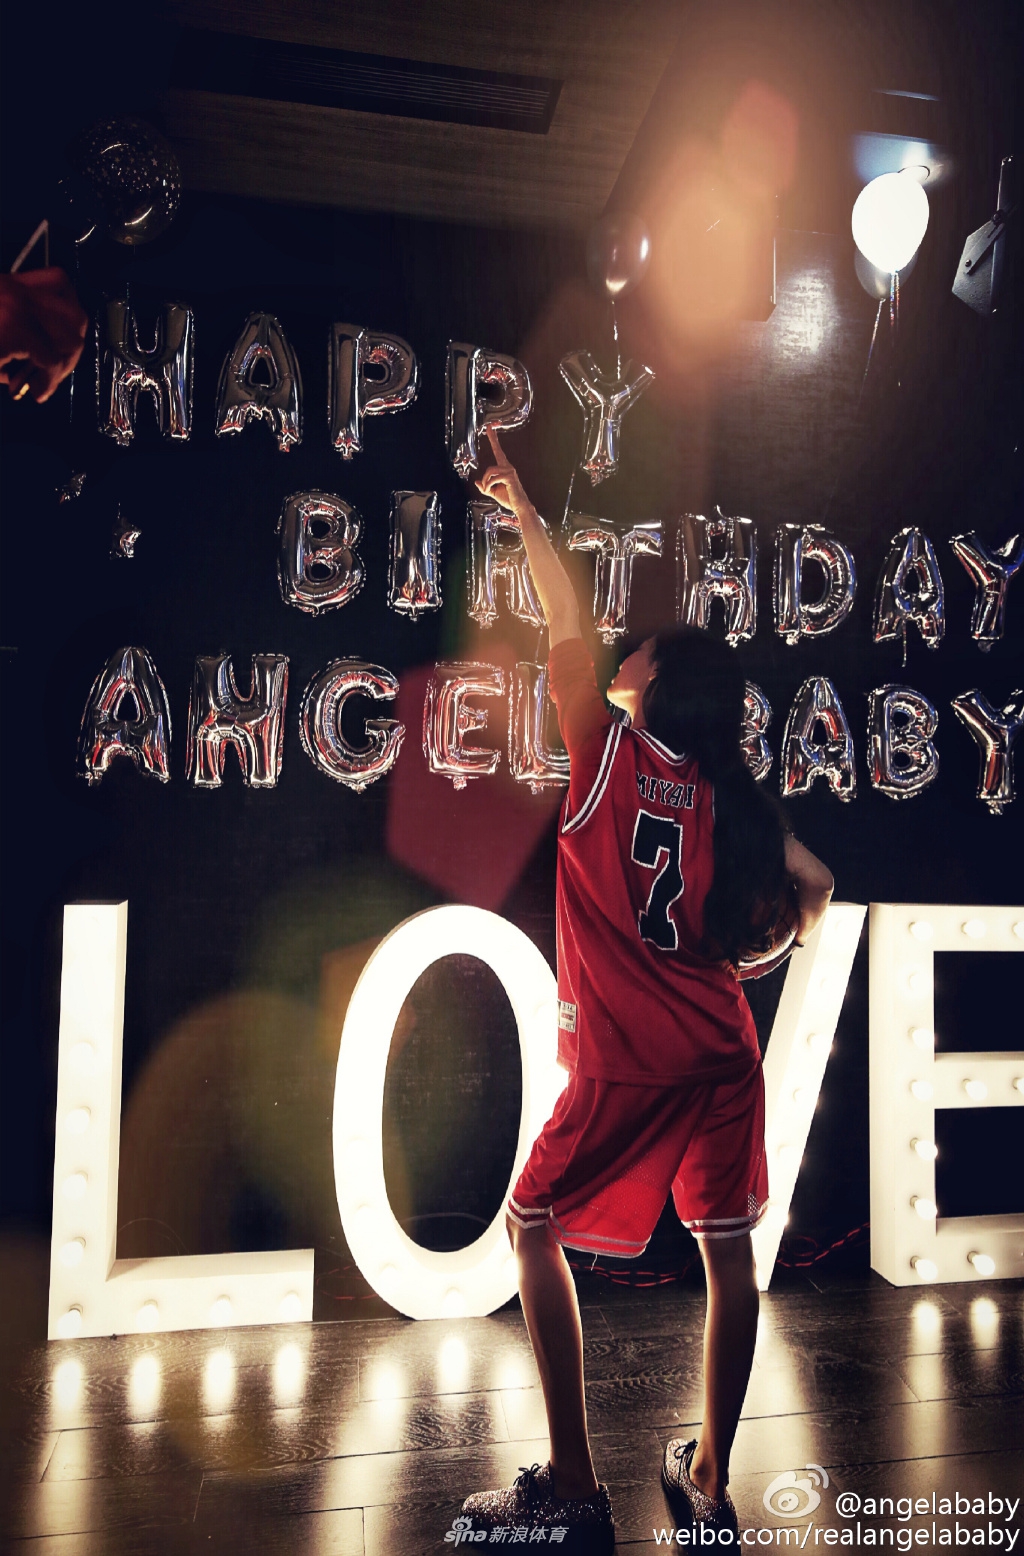 日前，女星Angelababy现身某运动各品牌活动现场，拿着篮球各种耍酷，穿运动服球鞋打篮球的Angelababy造型给几分？会比平时穿裙子高跟鞋的baby更好看吗？